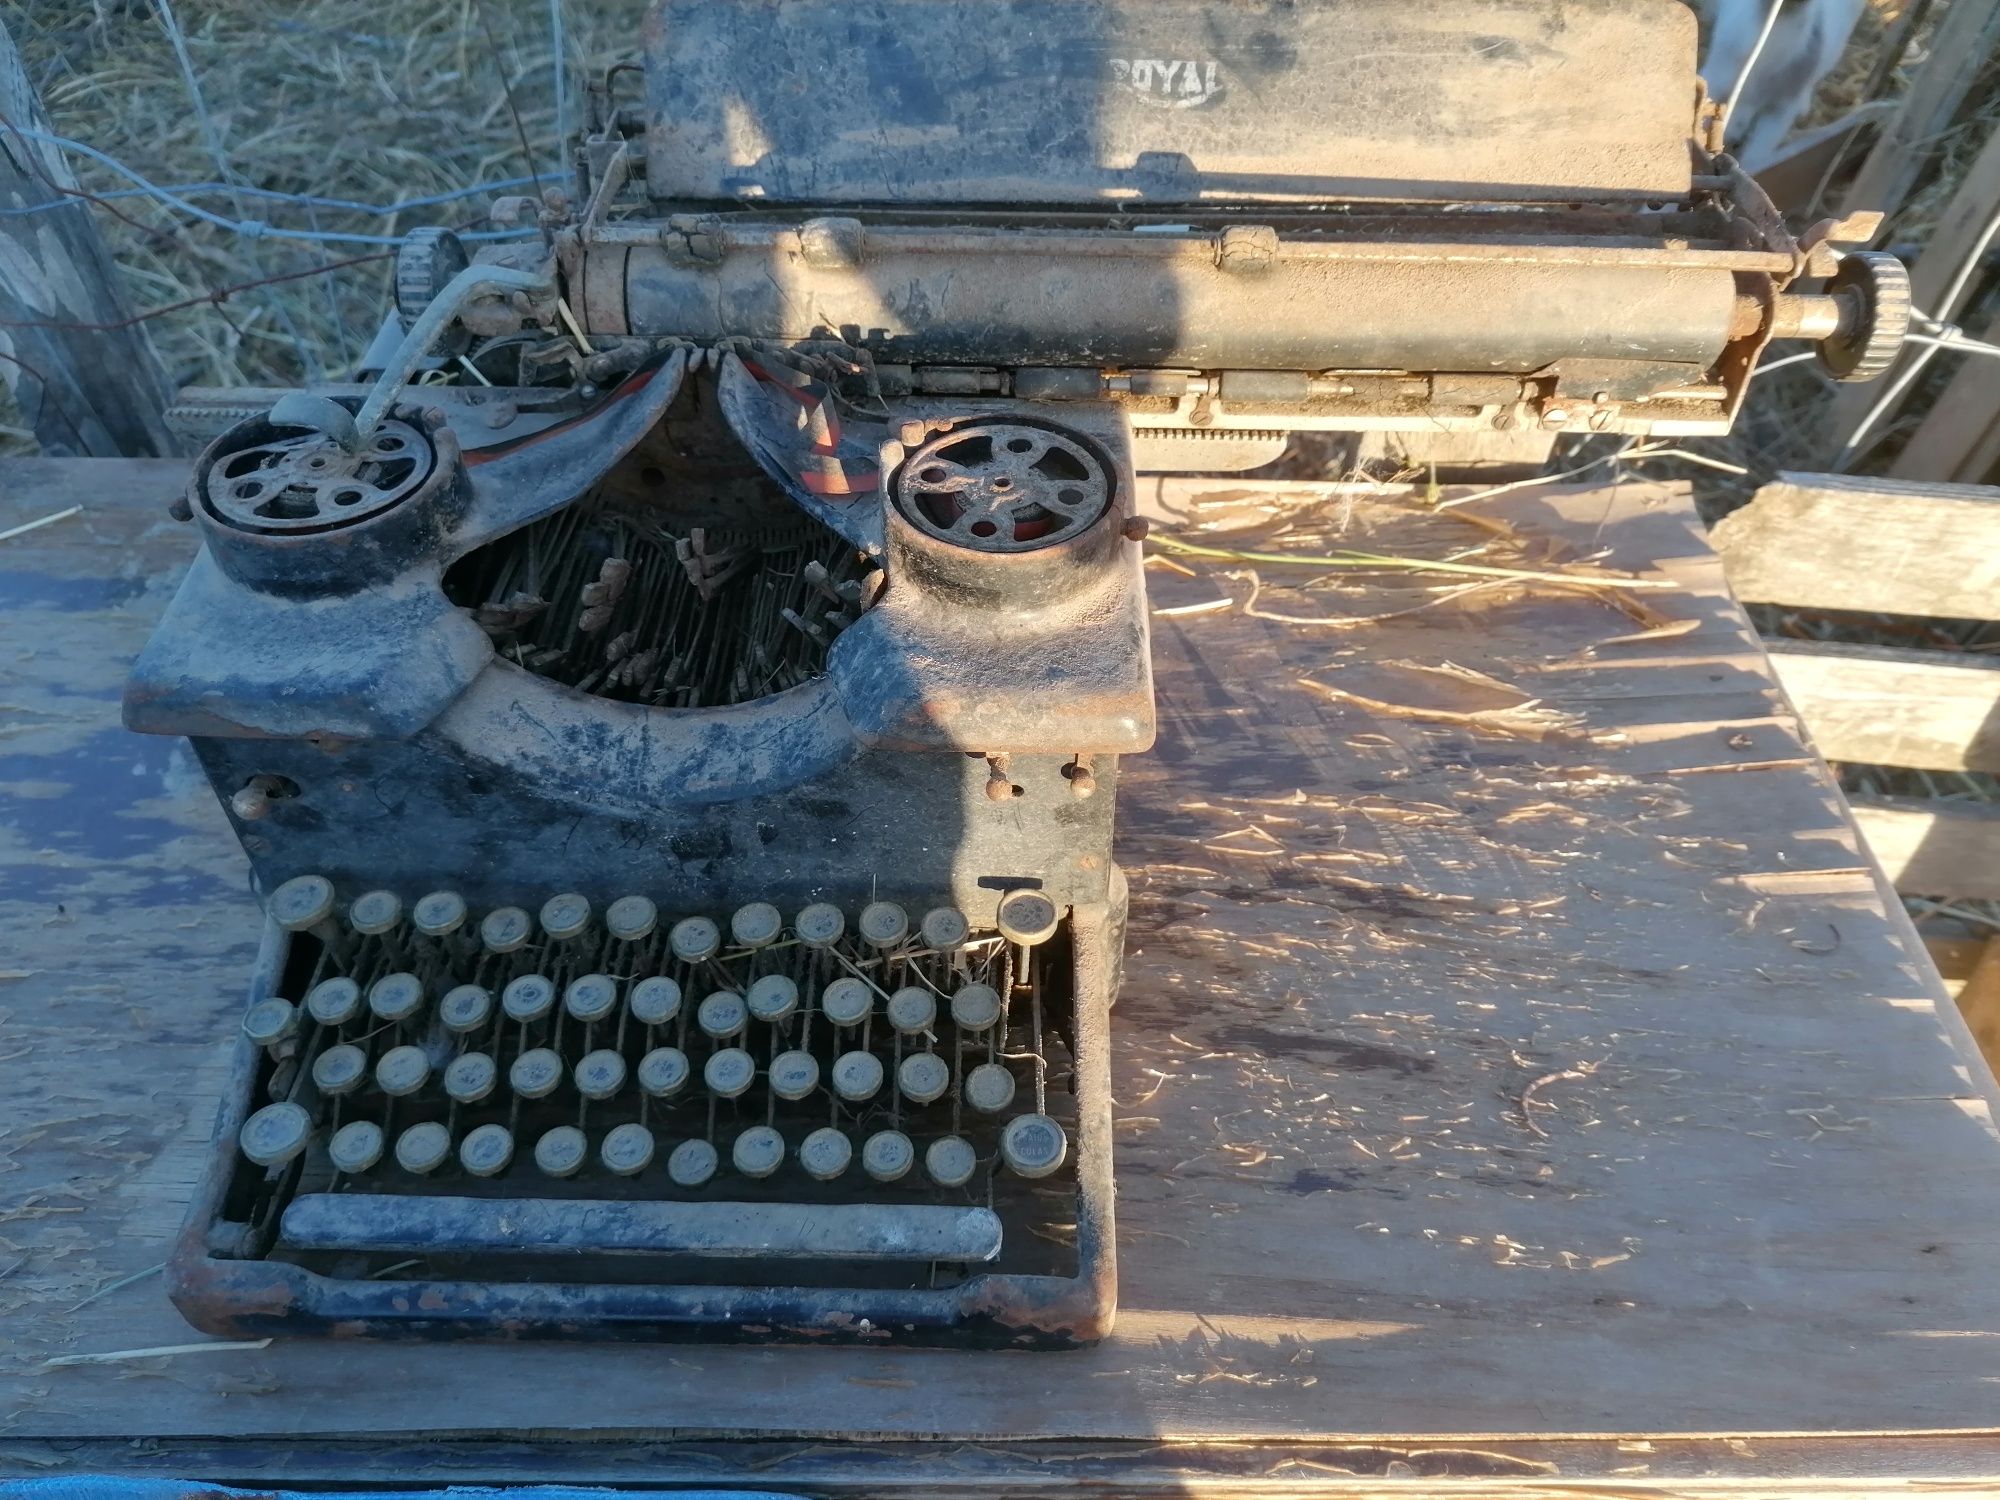 Máquina de escrever Royal